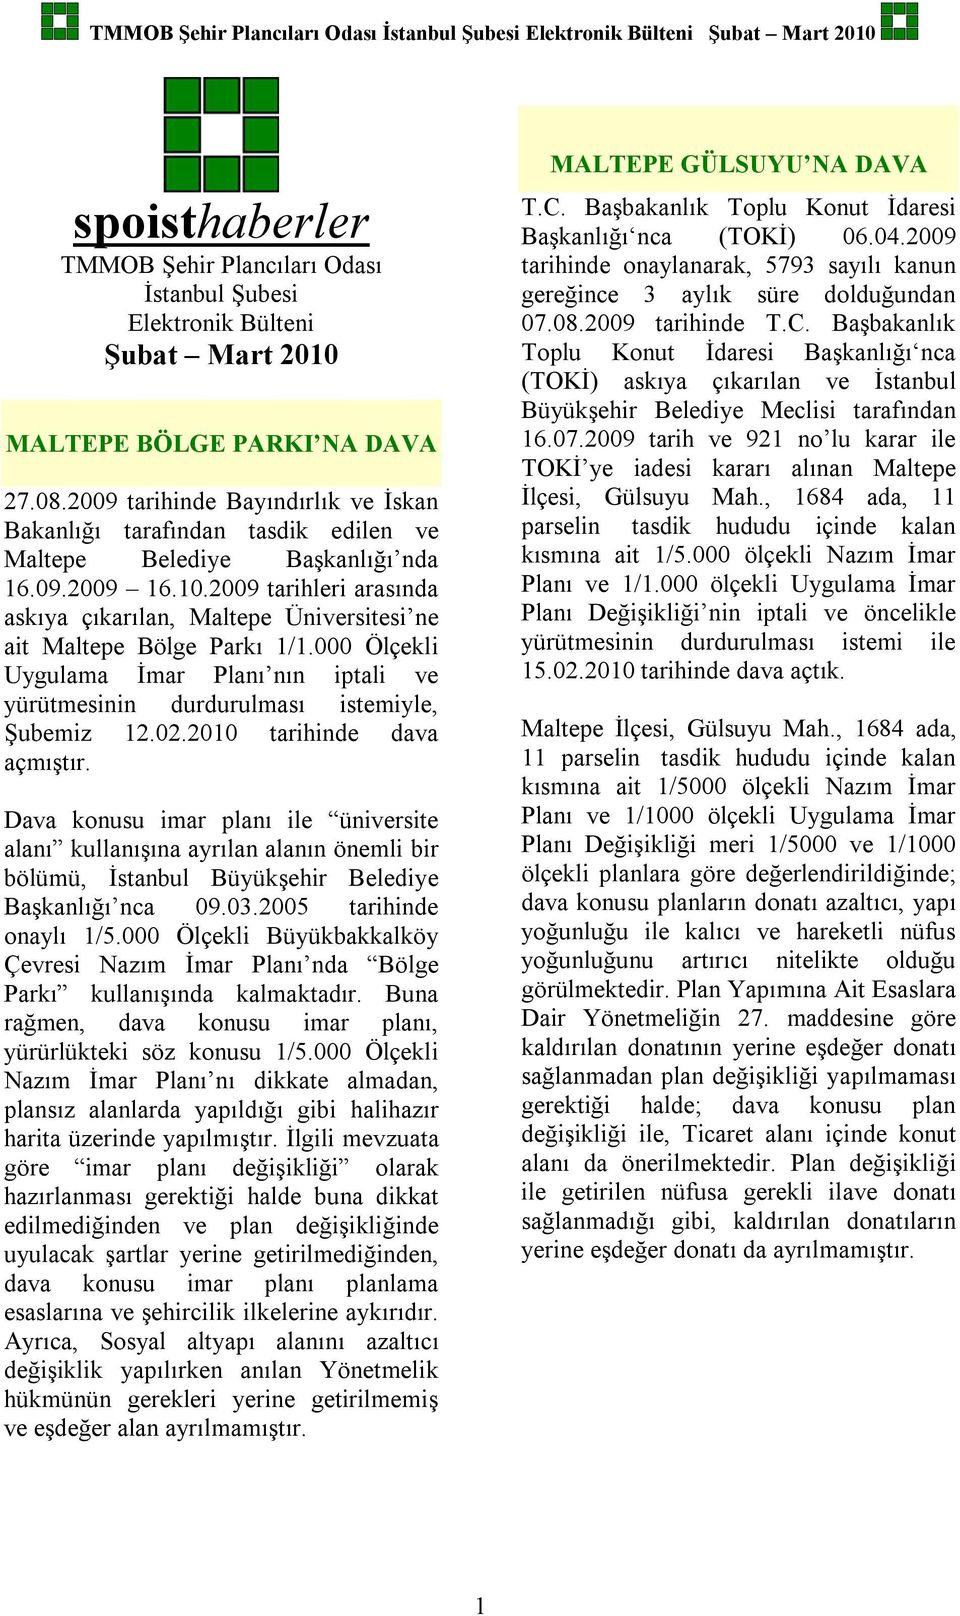 2009 tarihleri arasında askıya çıkarılan, Maltepe Üniversitesi ne ait Maltepe Bölge Parkı 1/1.000 Ölçekli Uygulama İmar Planı nın iptali ve yürütmesinin durdurulması istemiyle, Şubemiz 12.02.